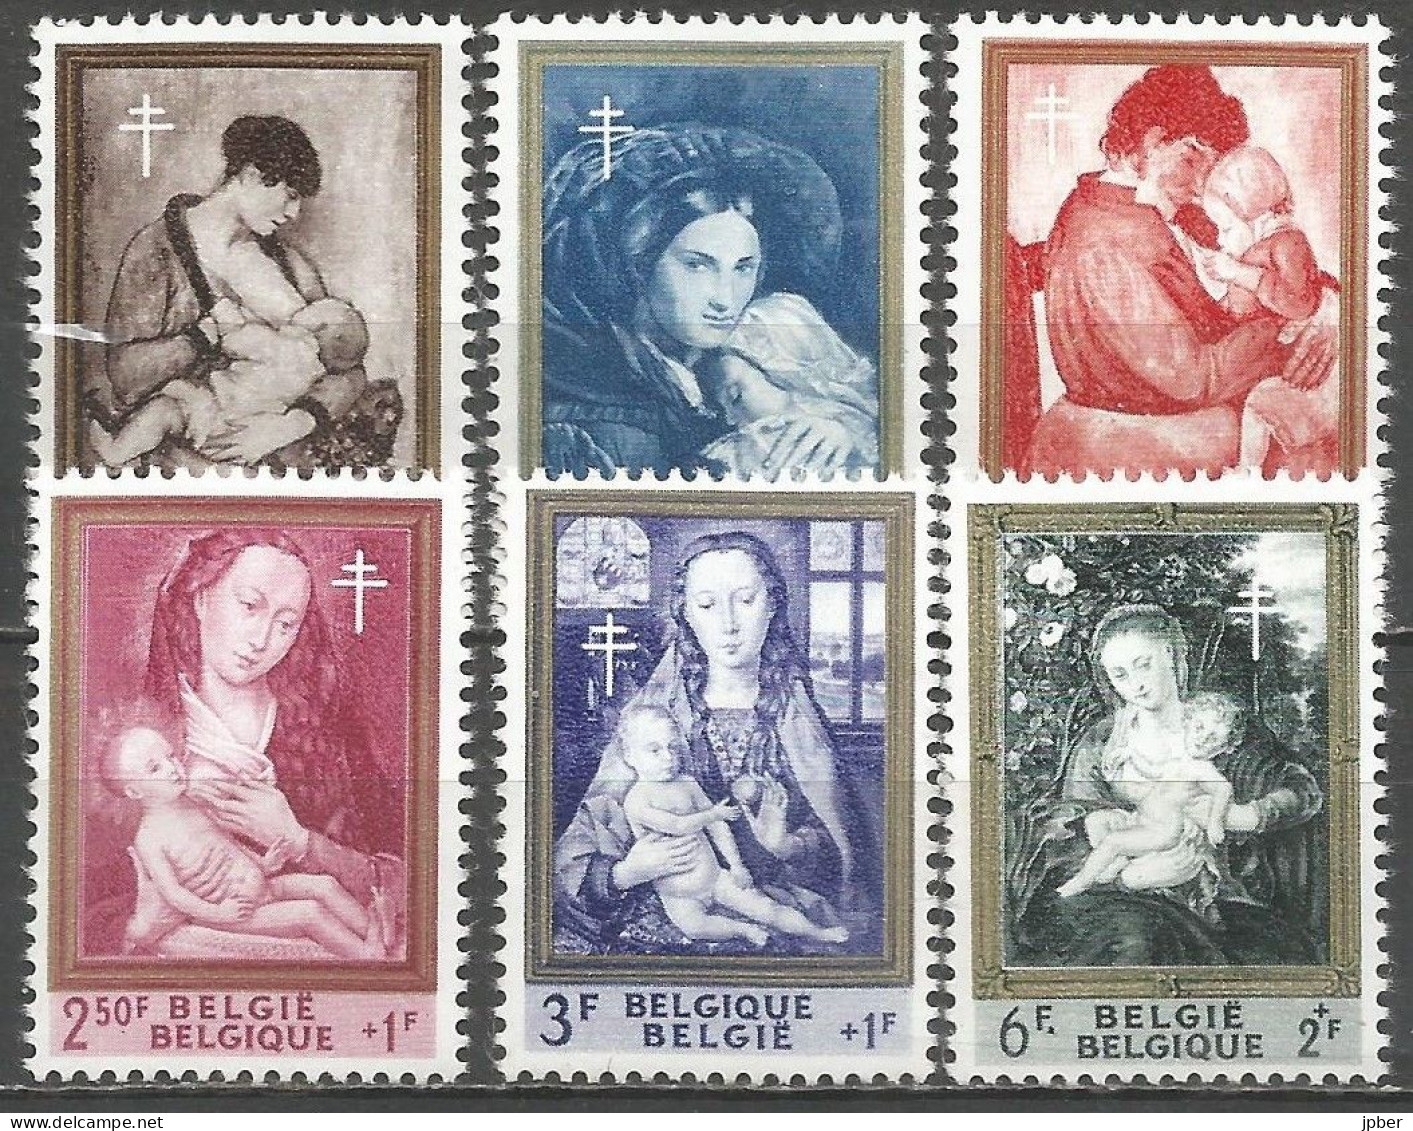 Belgique - Tableaux "Mère Et Enfant" - Paulus, Navez, Permeke, Van Der Weyden, Memling, Rubens - N°1198 à 1203 ** - Ongebruikt